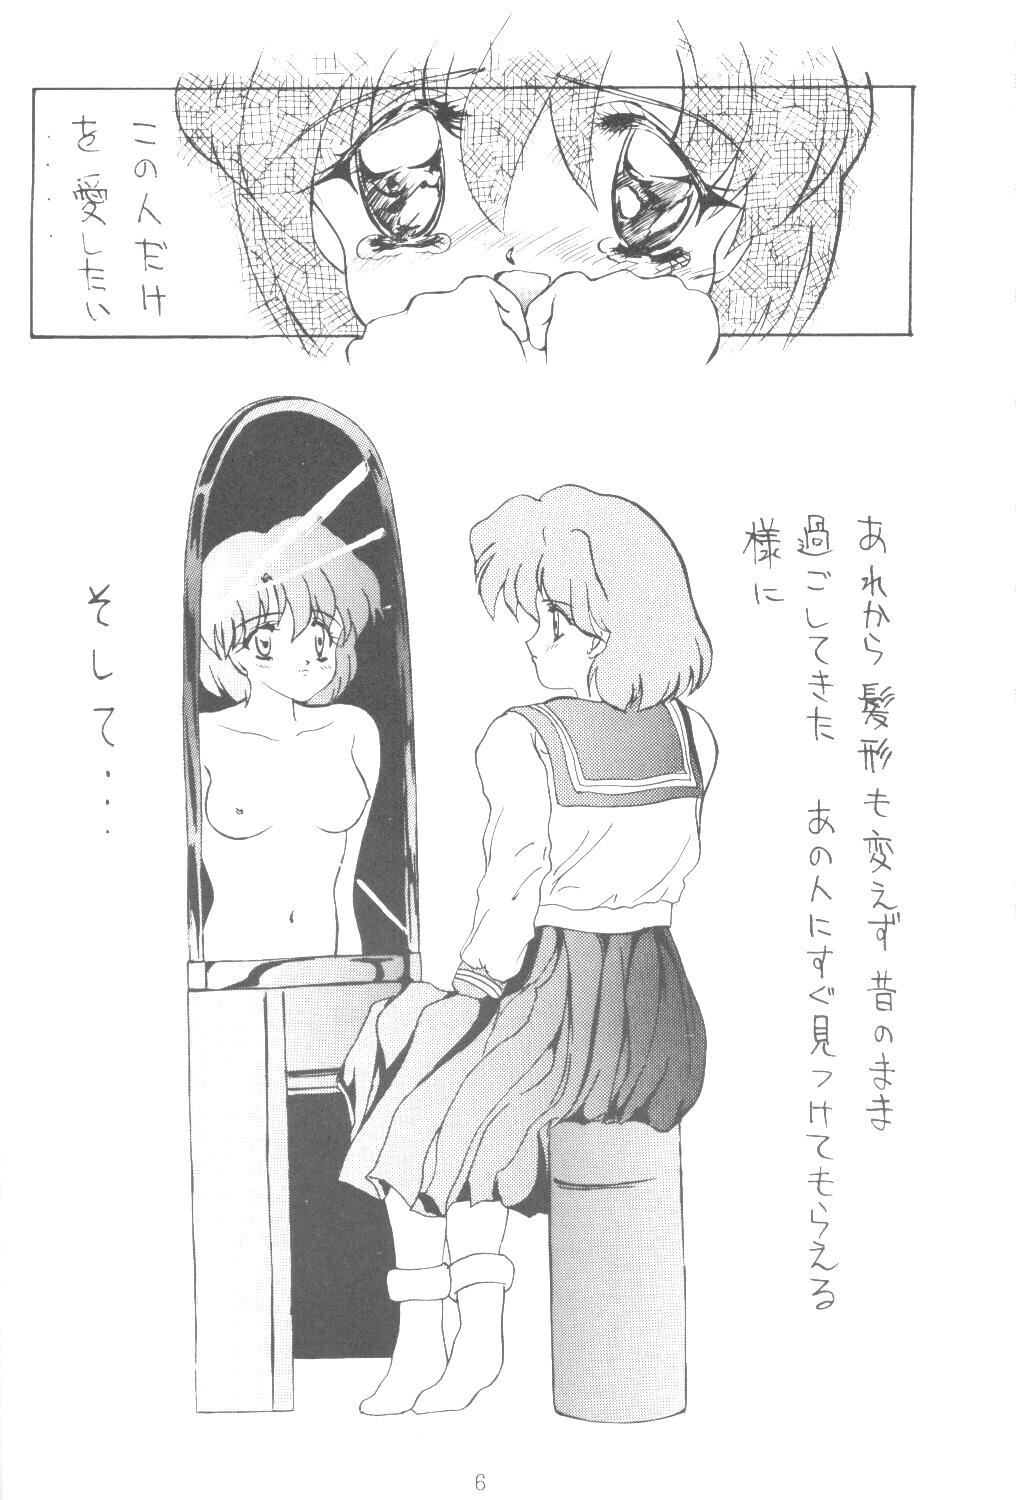 Big Penis ALIVE AMI LOST - Sailor moon Emo Gay - Page 5